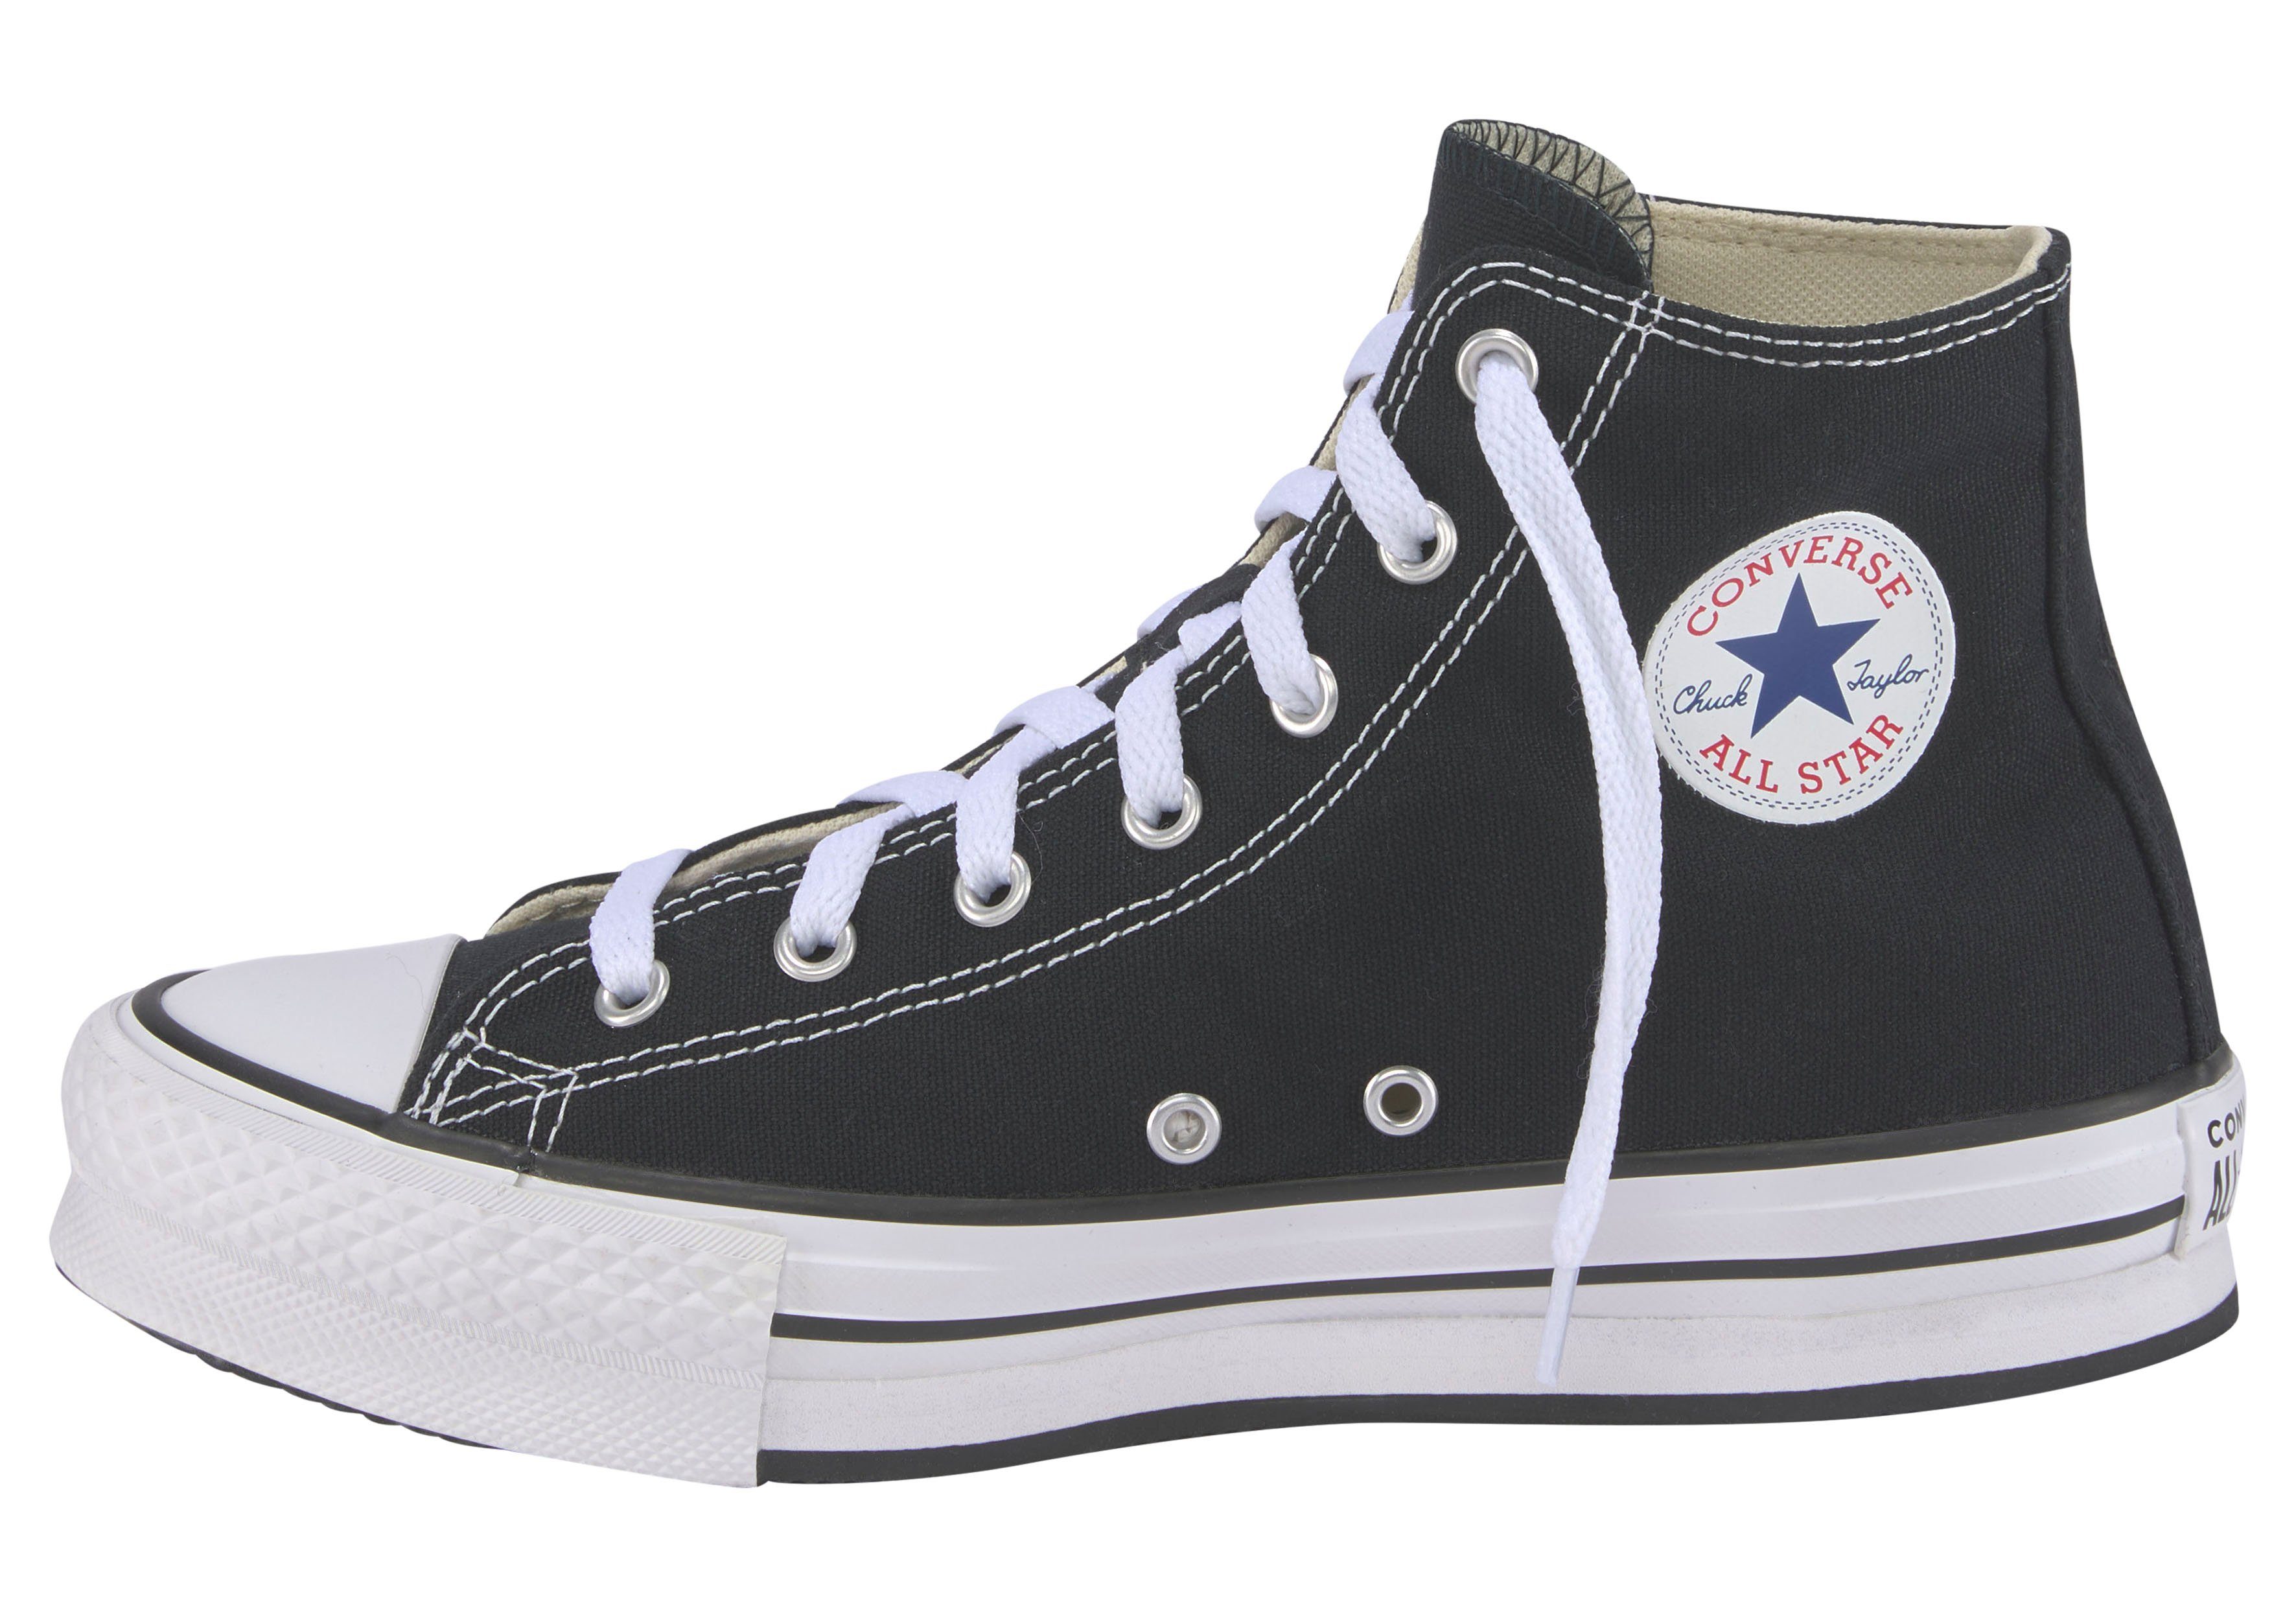 EVA TAYLOR CANV LIFT CHUCK ALL STAR Sneaker schwarz-weiß Converse